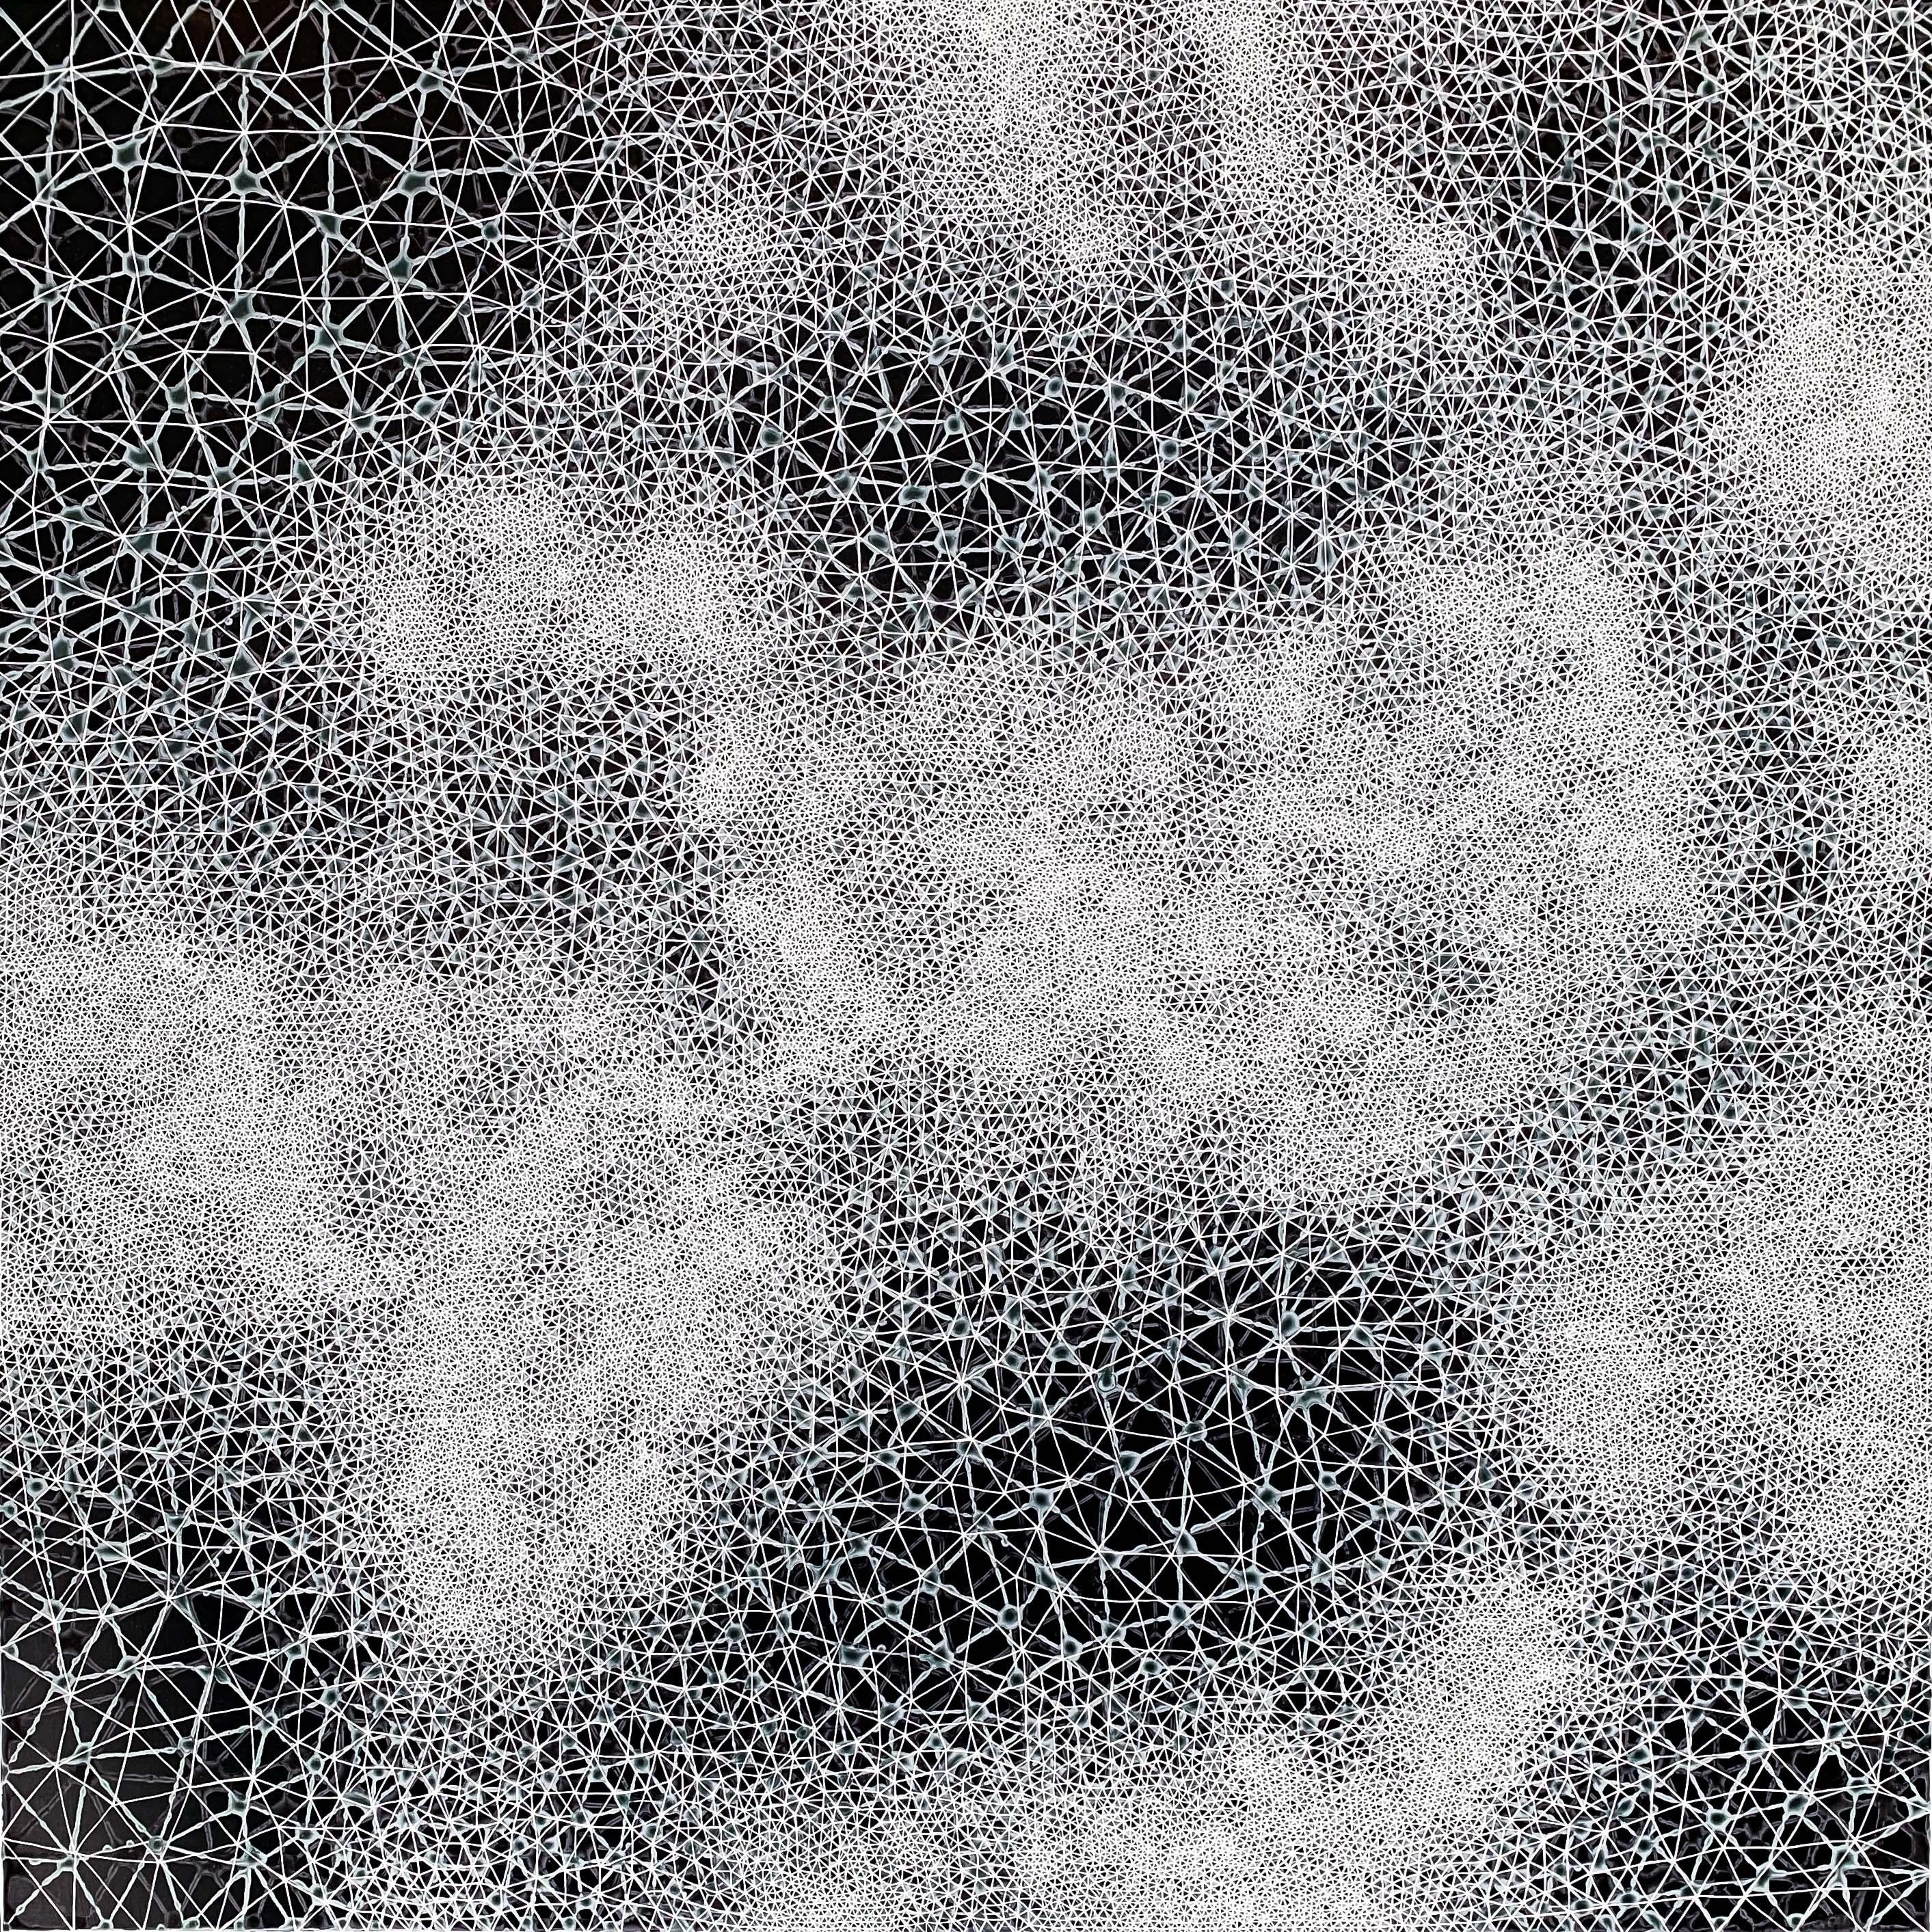 Cohérence - peinture abstraite géométrique diptyque en noir et blanc - Painting de Hadley Radt